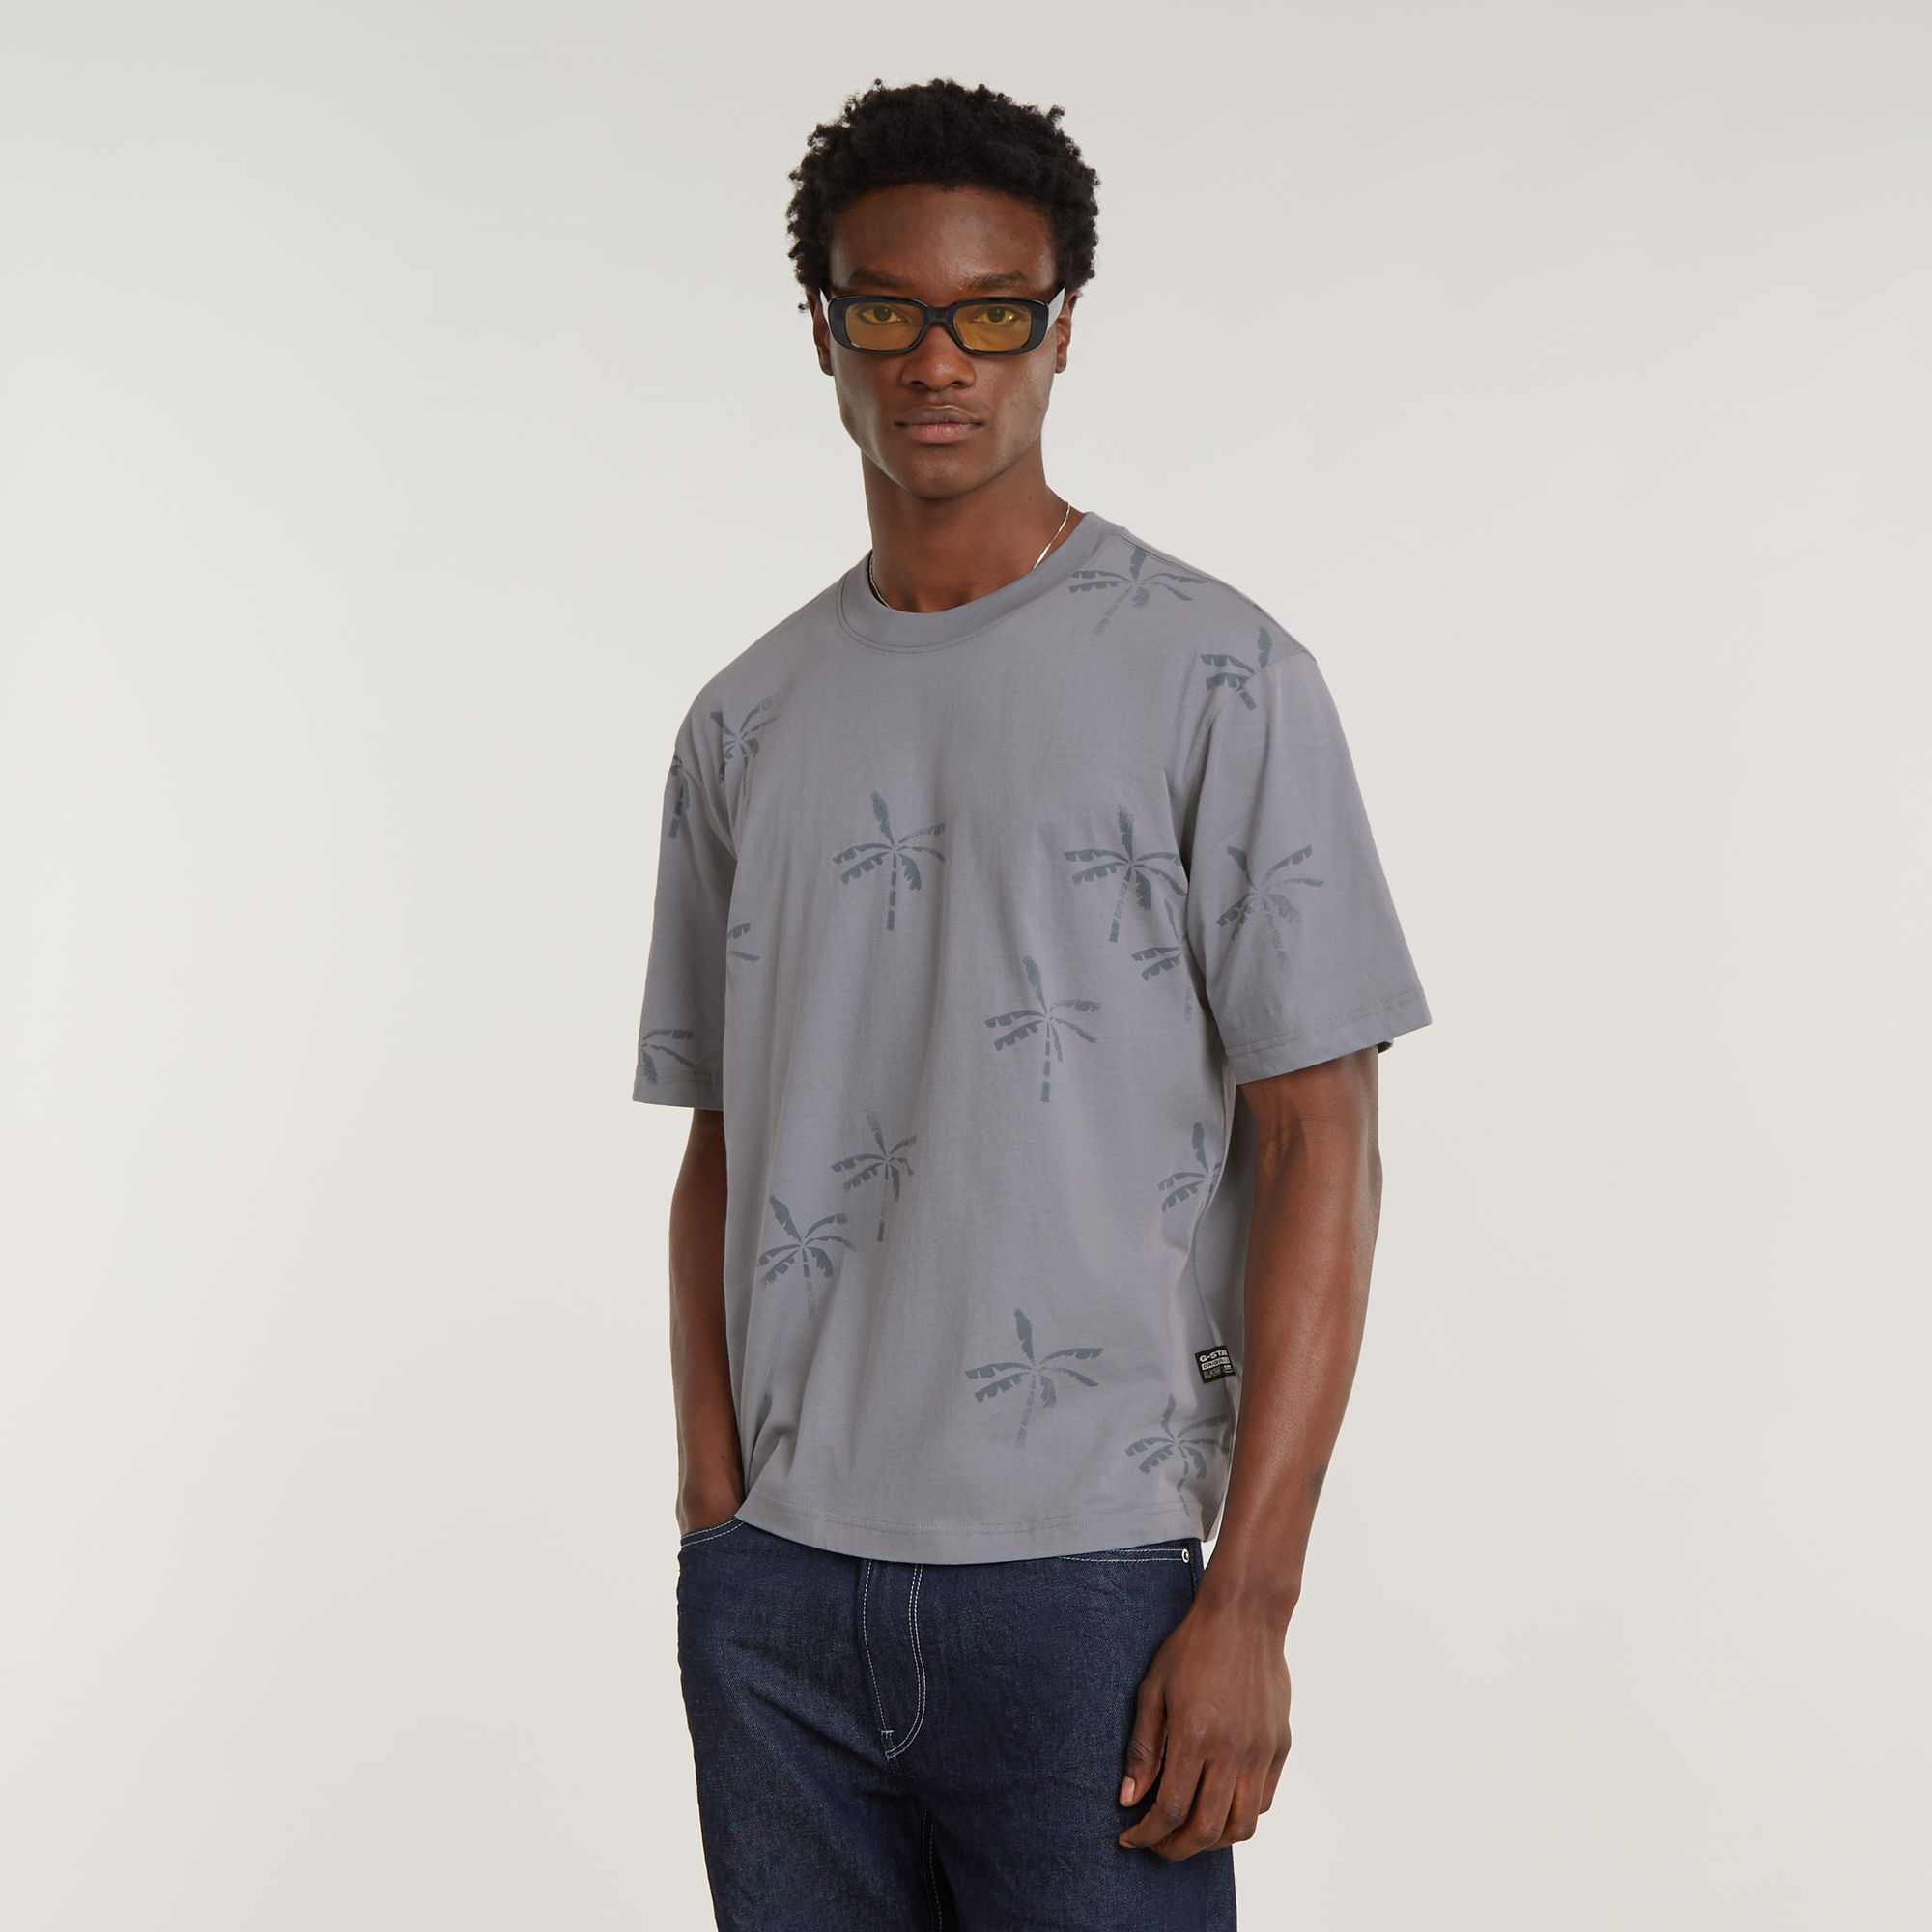 

Musa Palm Allover Print Boxy T-Shirt - Multi color - Men